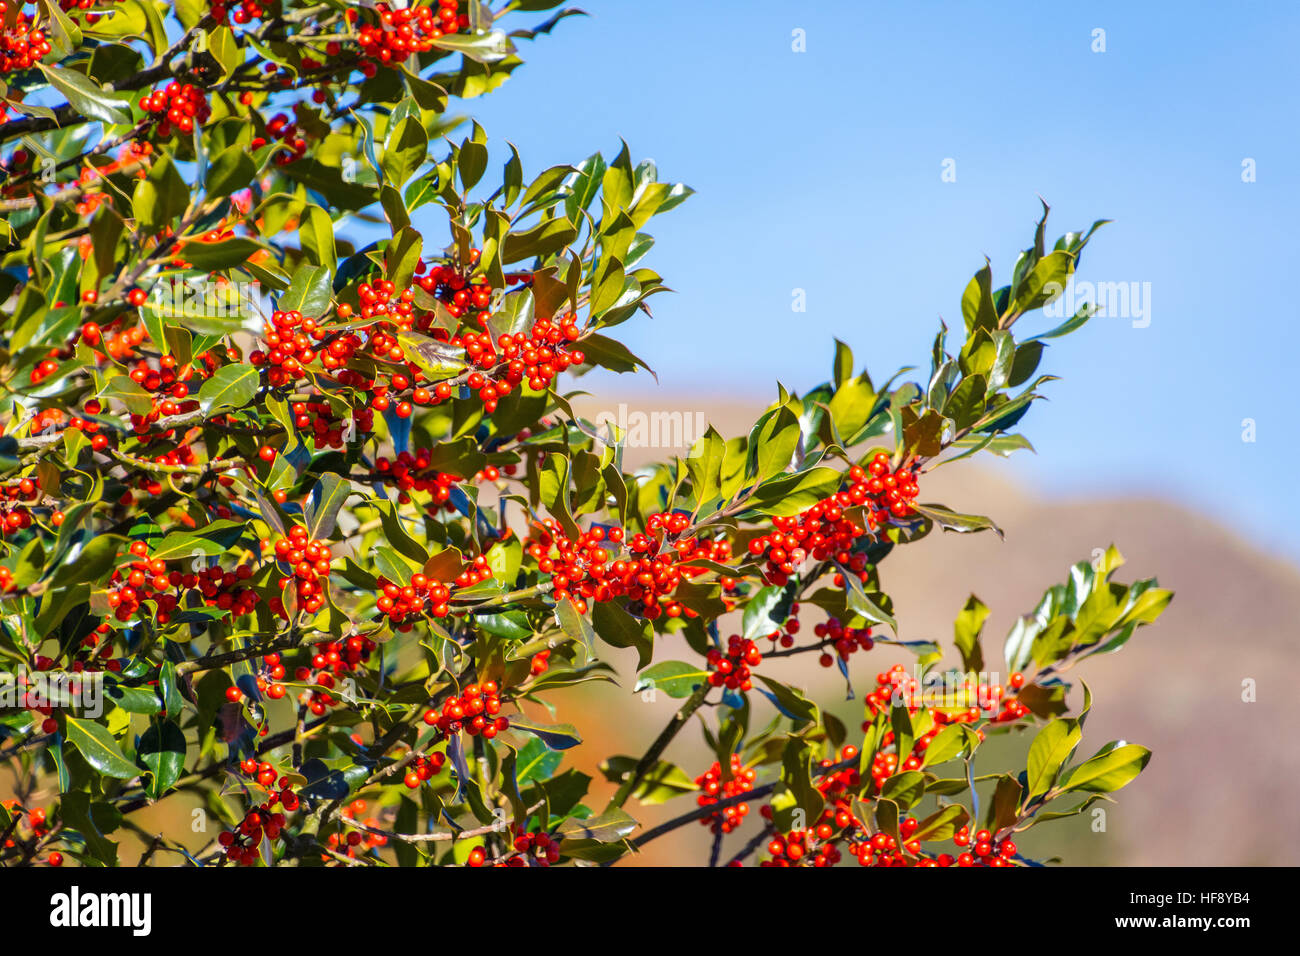 Holly Blättern und roten Beeren gegen blauen Himmel Stockfoto